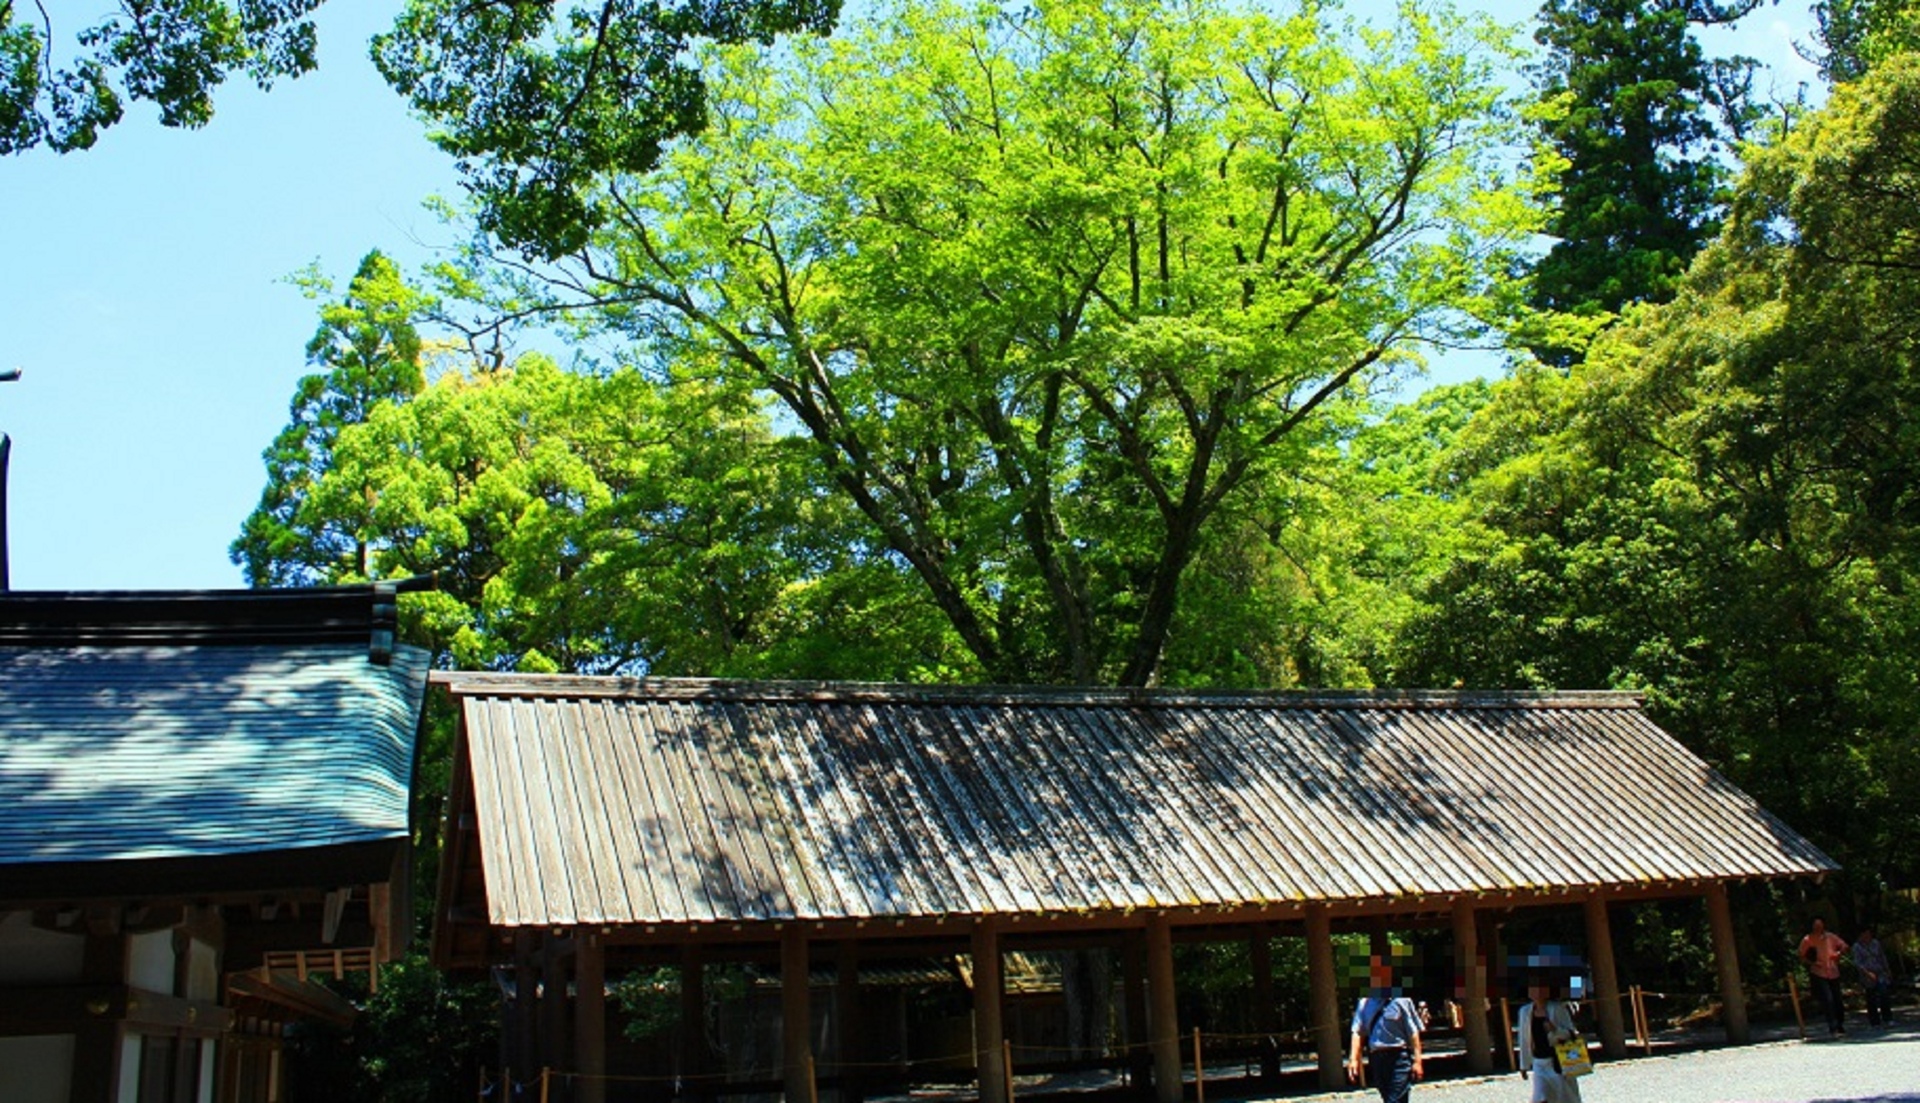 日本の風景 新緑の伊勢神宮 壁紙19x1103 壁紙館